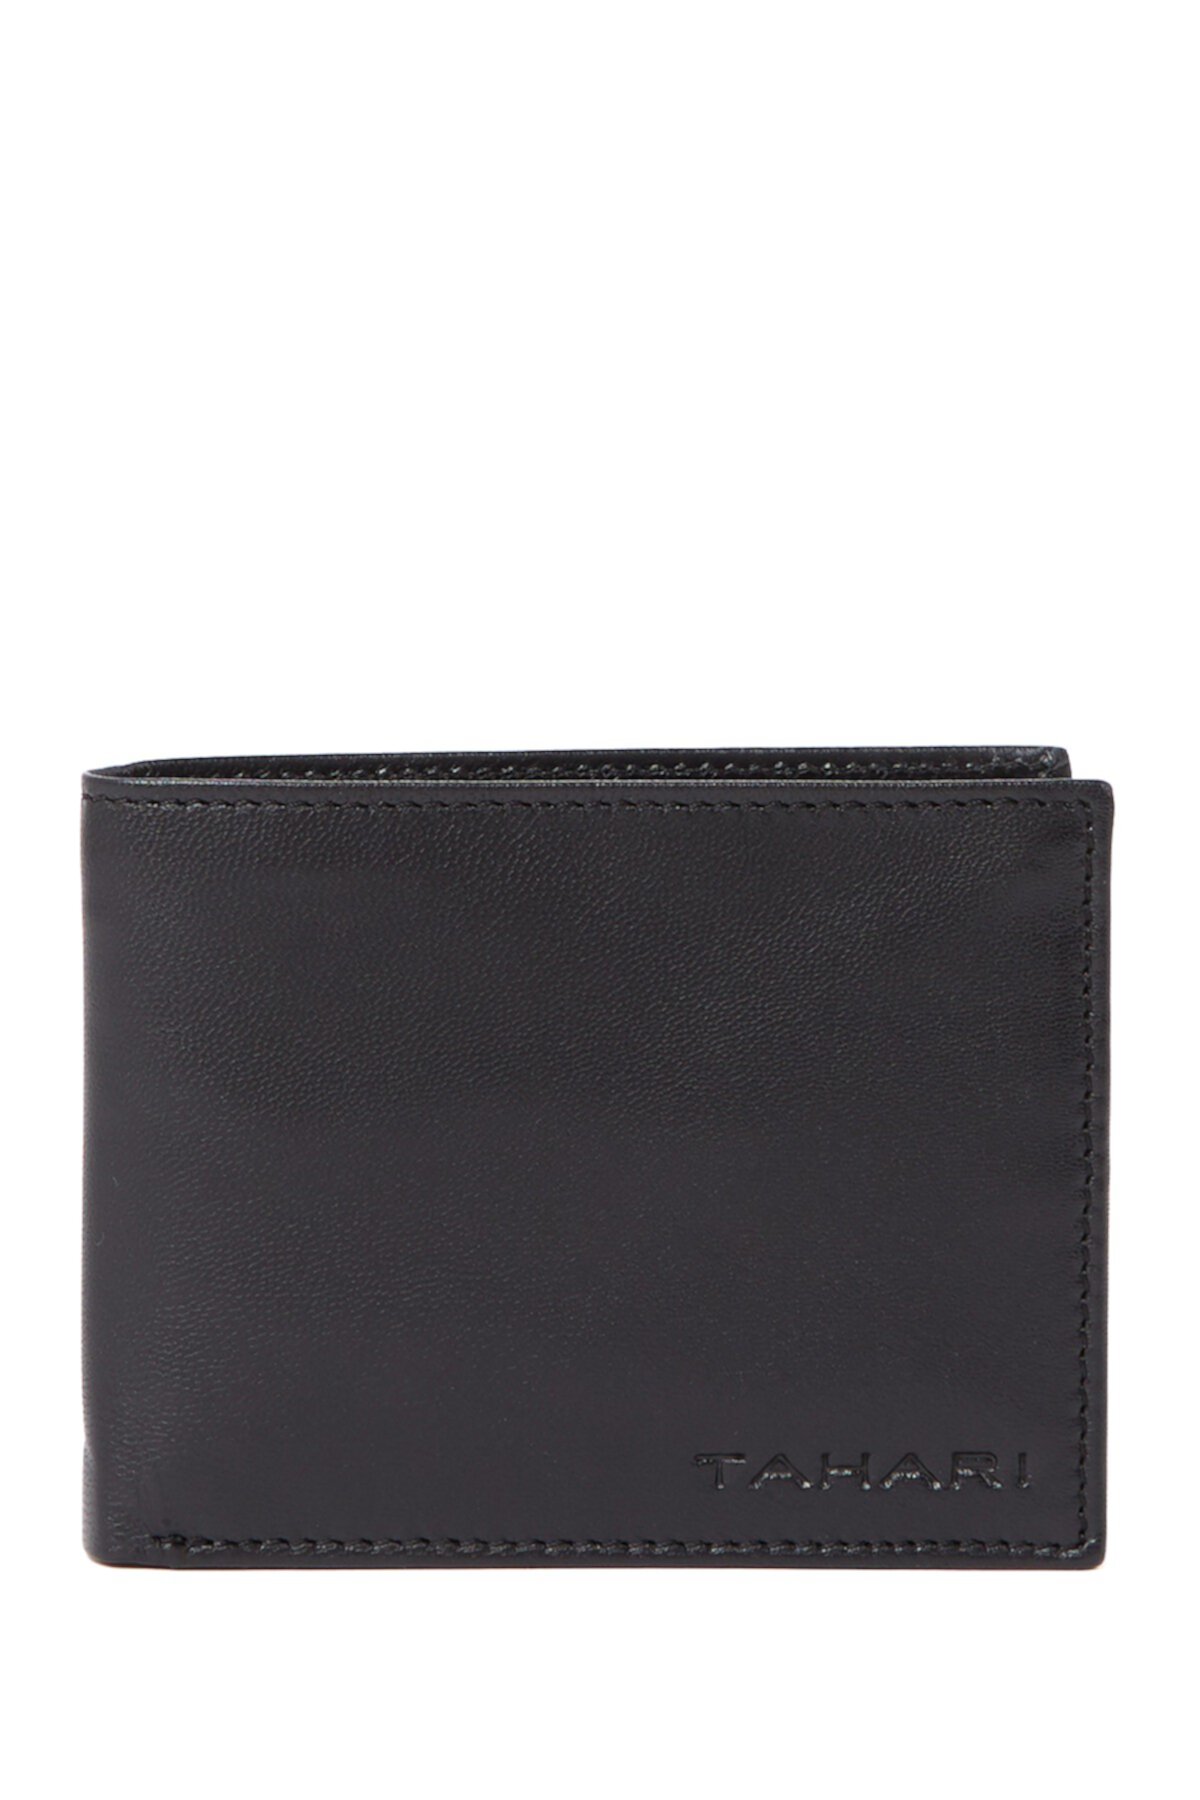 Кожаный кошелек RFID с двойным сложением Tahari